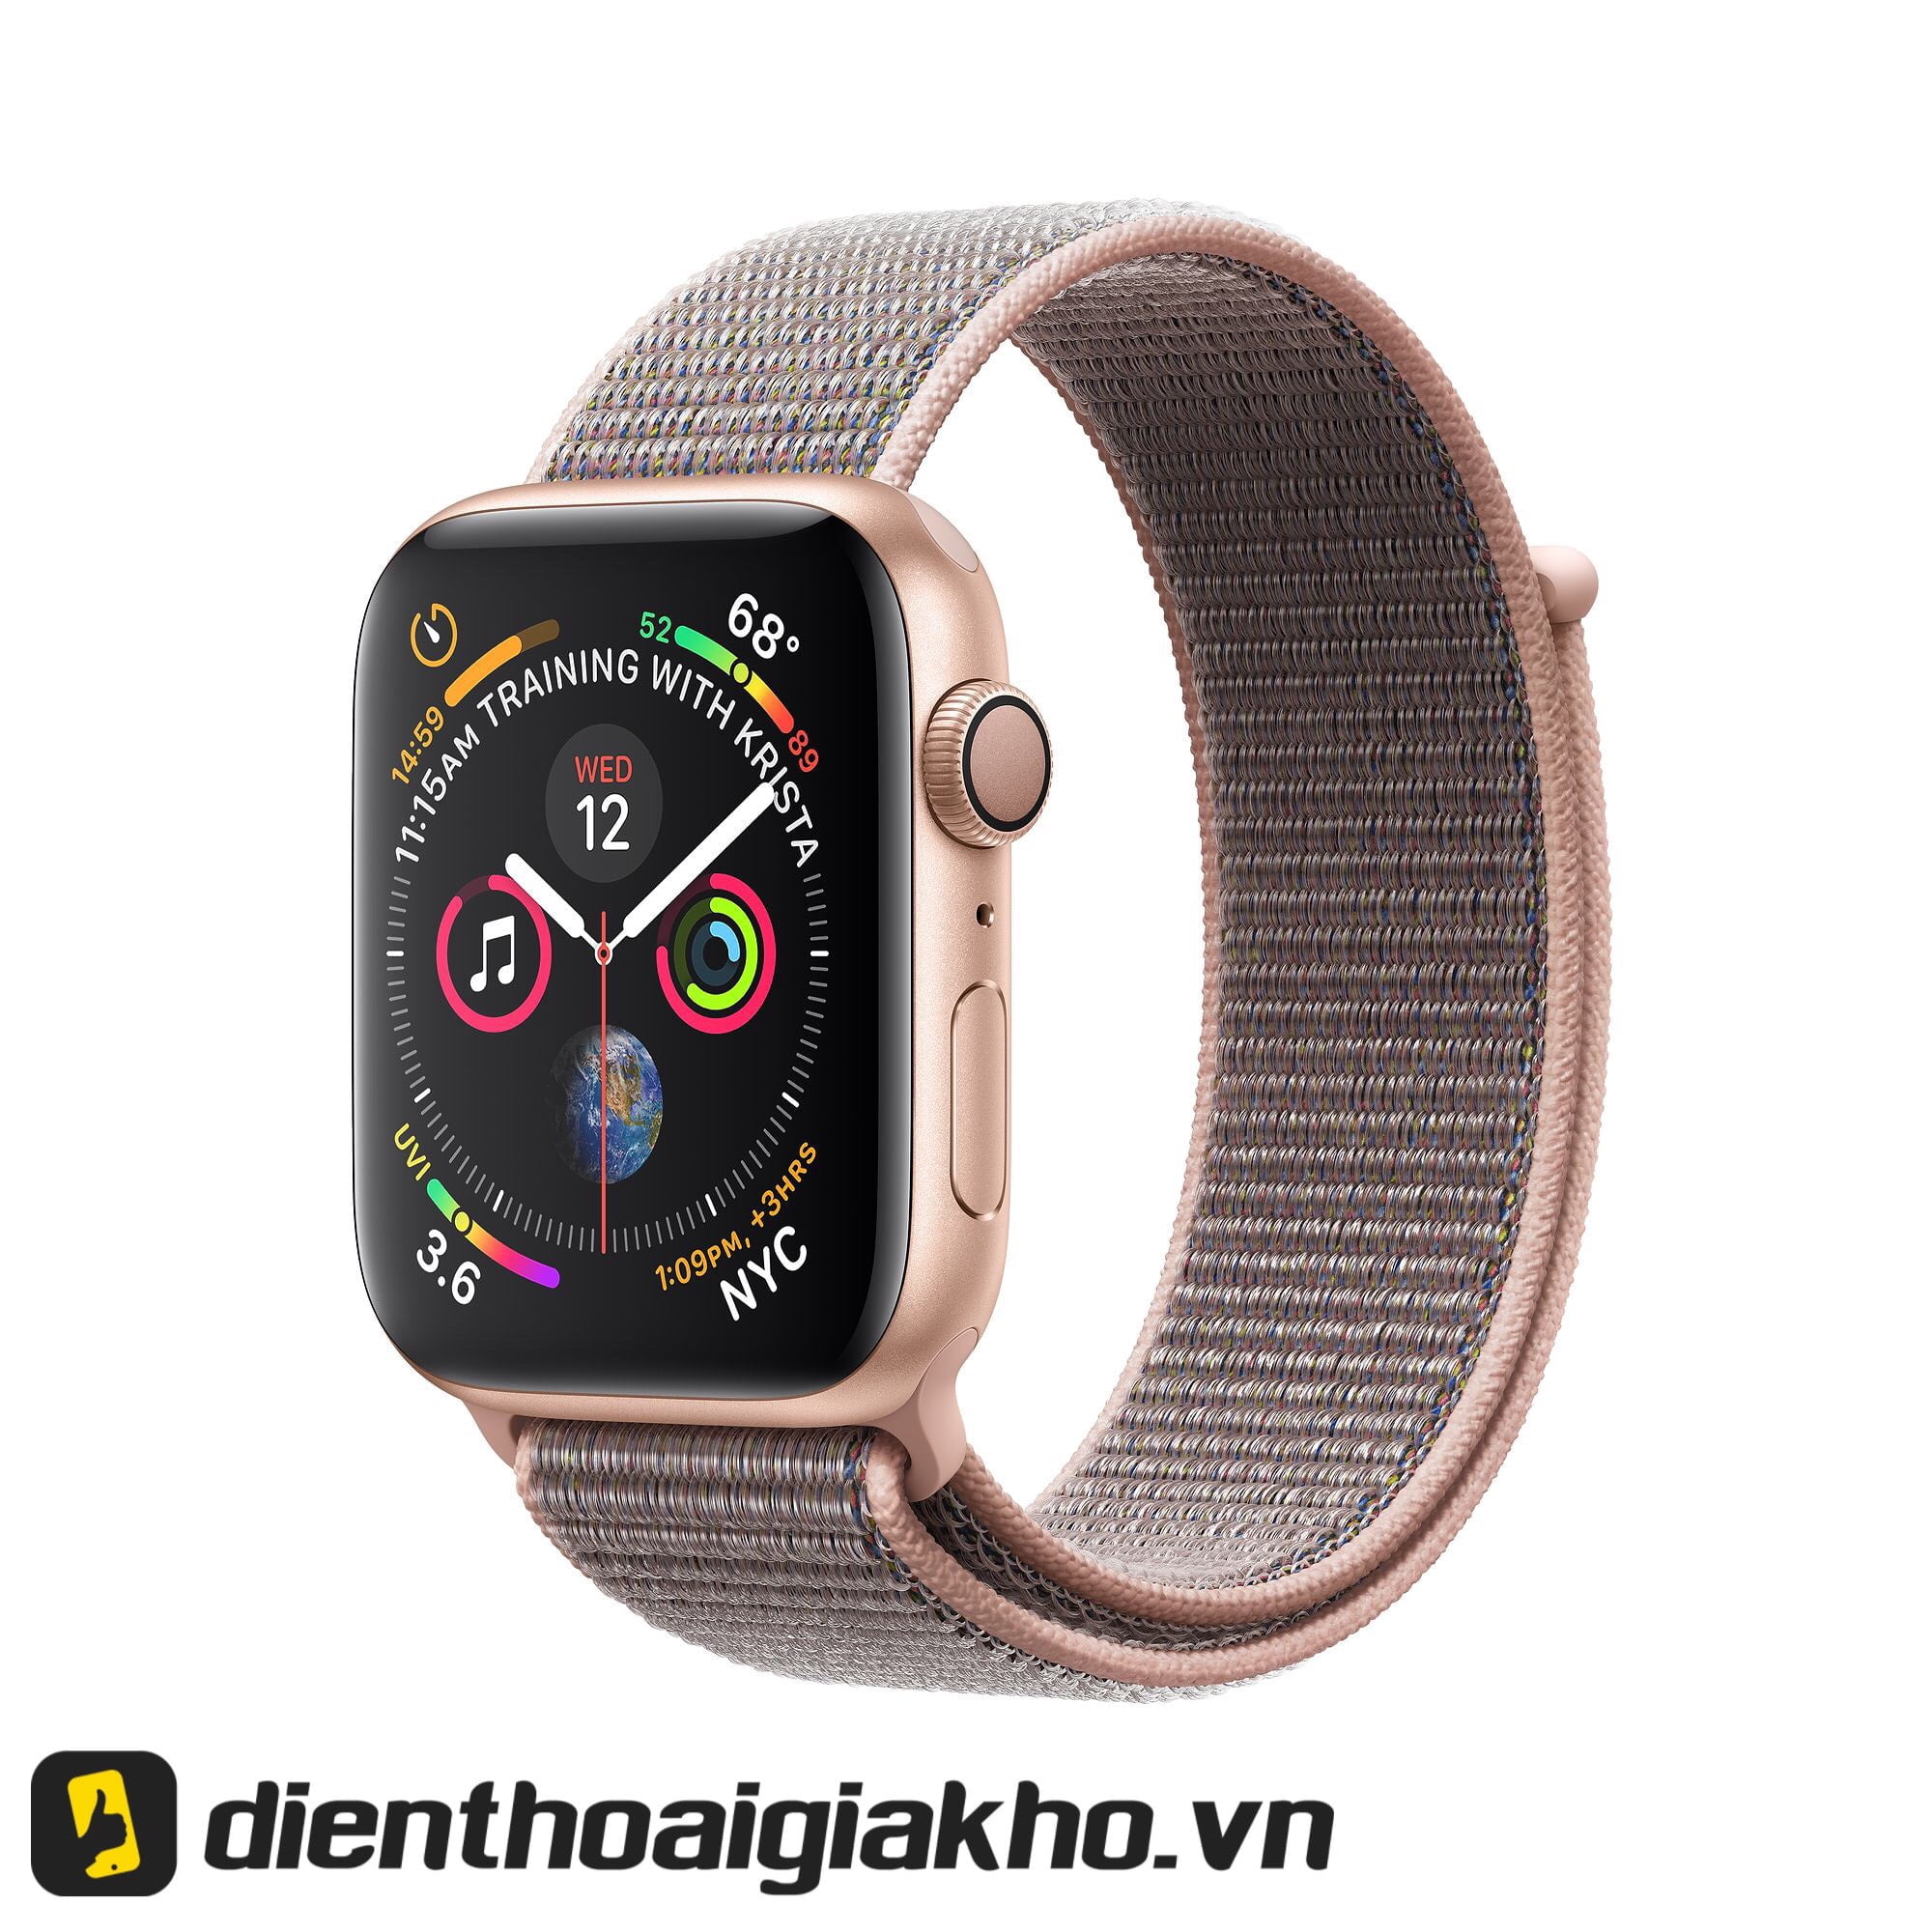 Chiếc đồng hồ Apple Watch Series 4 40mm GPS Aluminum. Được hãng Apple tích hợp những tinh hoa trong phong cách thiết kế. Phải nói là đậm chất đơn giản nhờ phối màu lẫn viền nét tinh tế, sang trọng bậc nhất. Mặt đồng hồ không quá to, vẫn theo xu hướng thiết kế theo ngôn ngữ truyền thống.